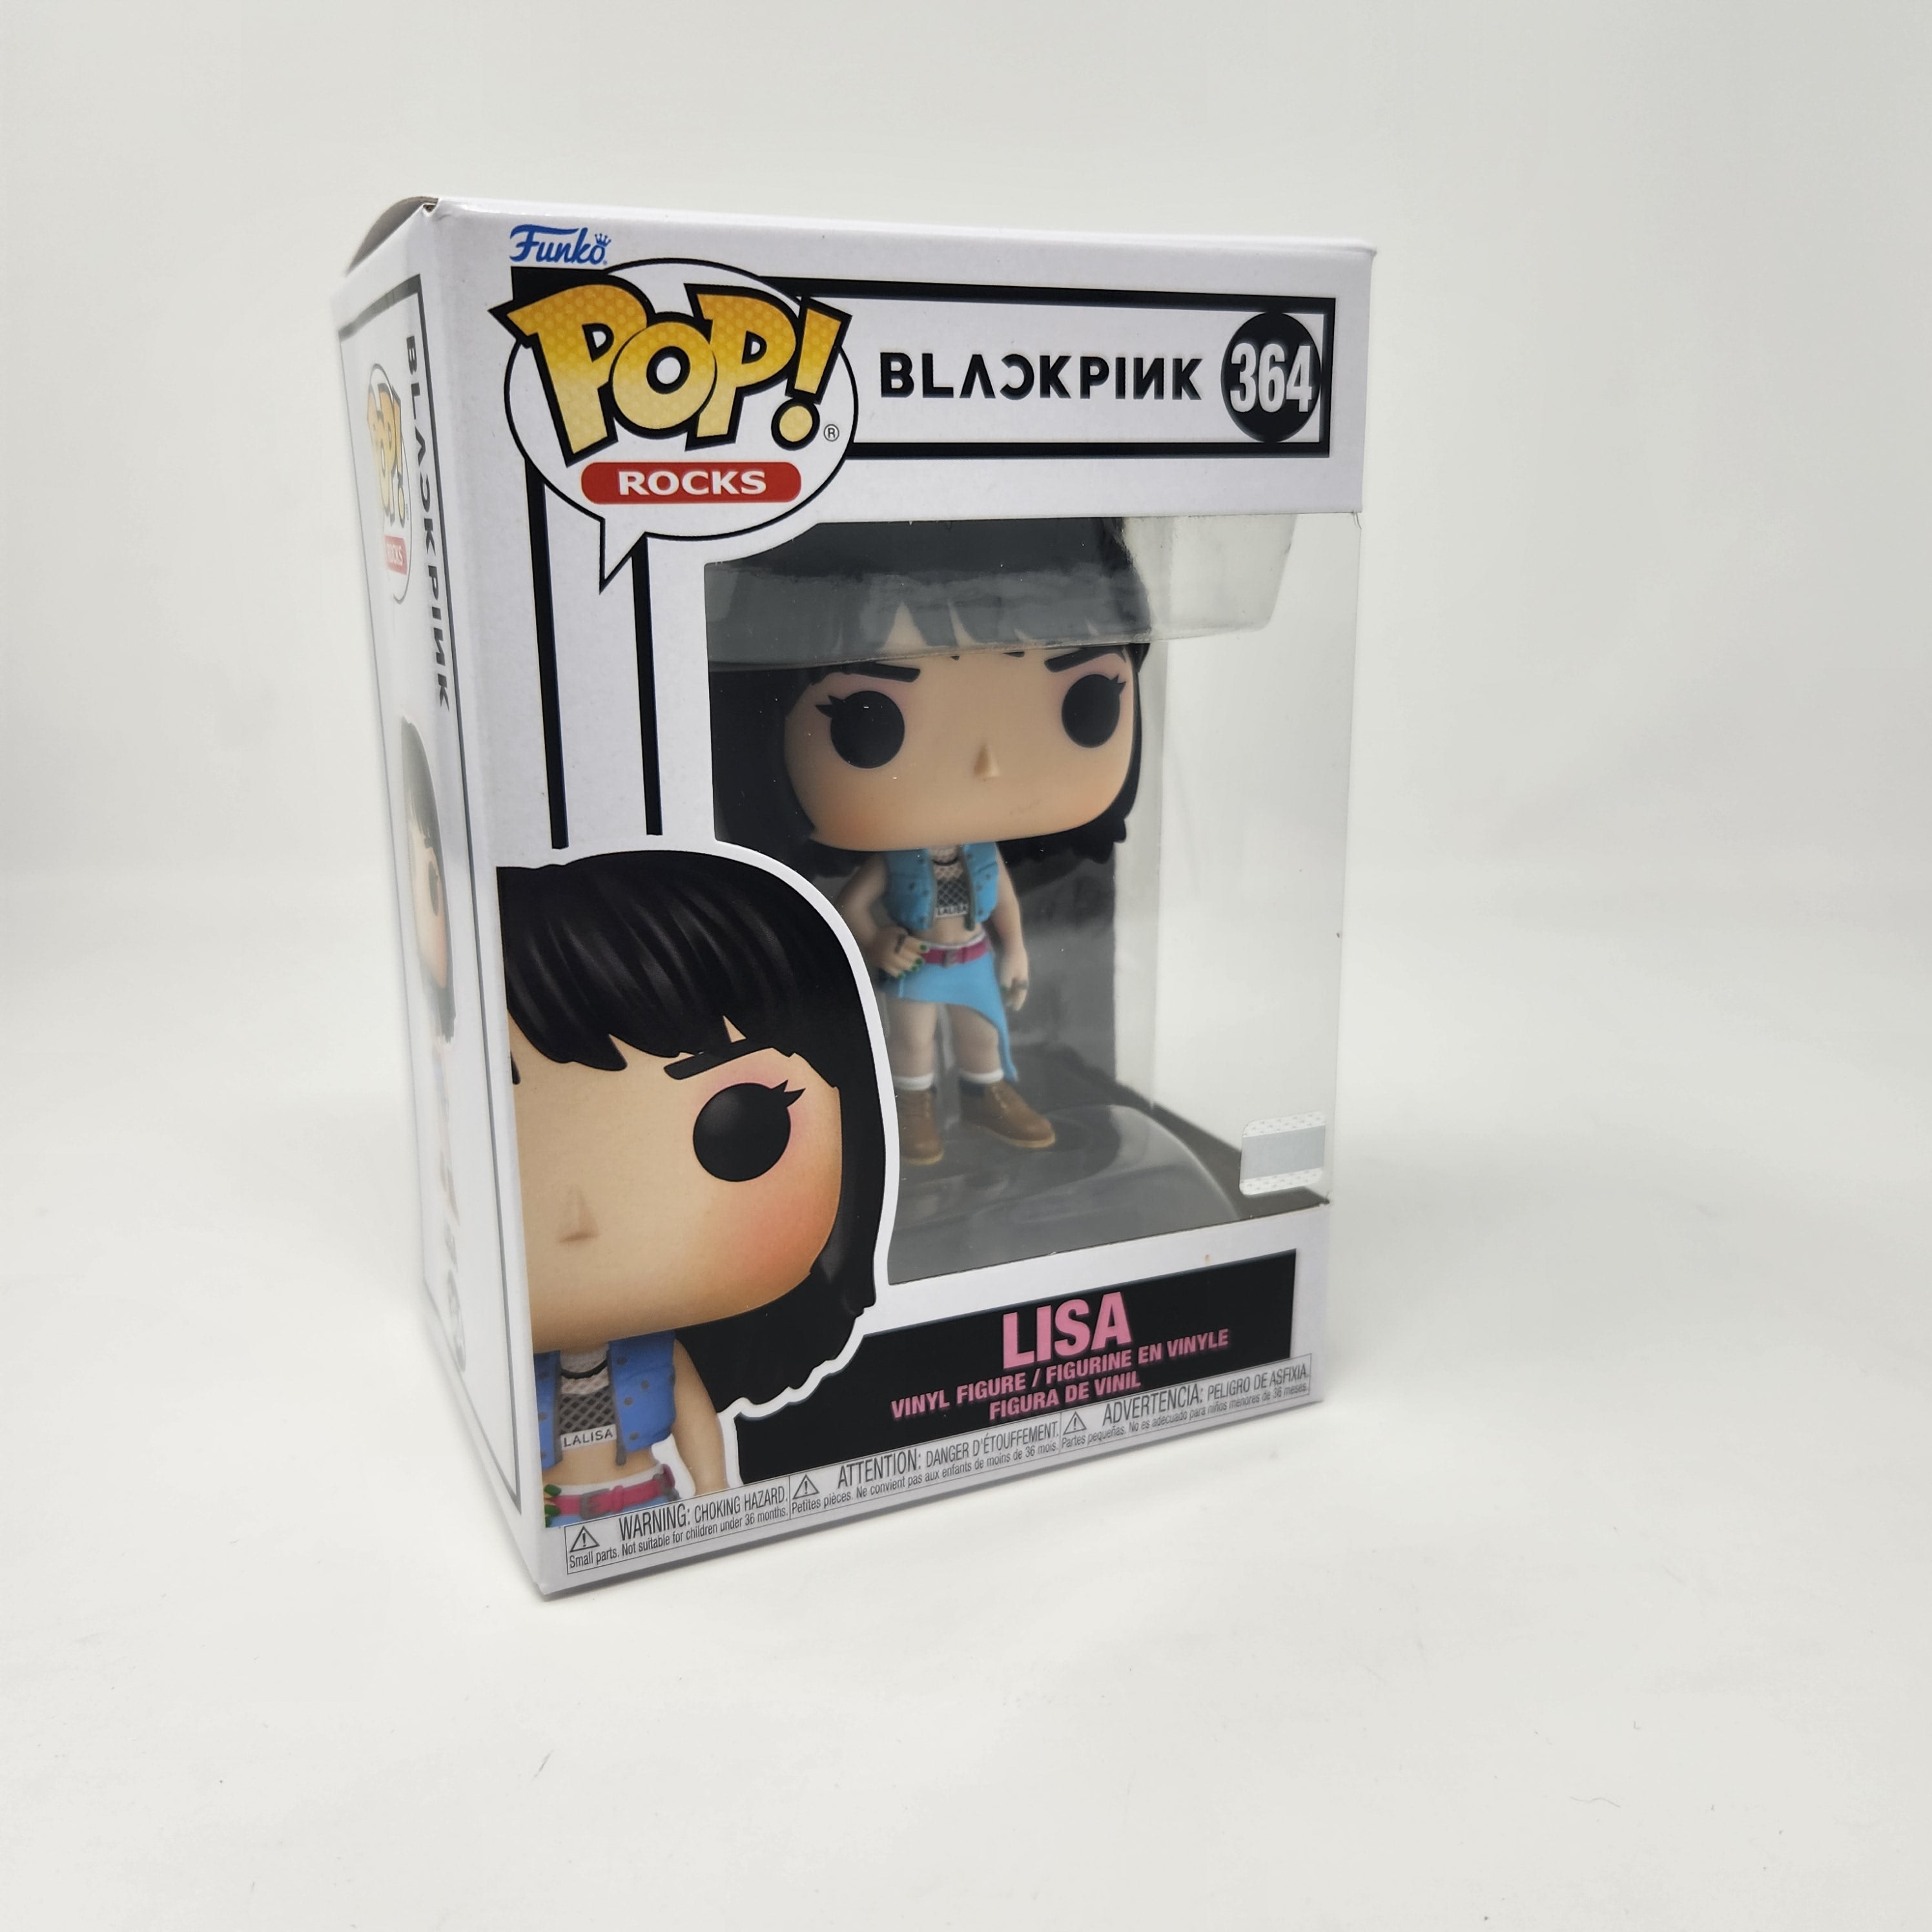 BLACKPINK - POP Rocks N° 364 - Lisa